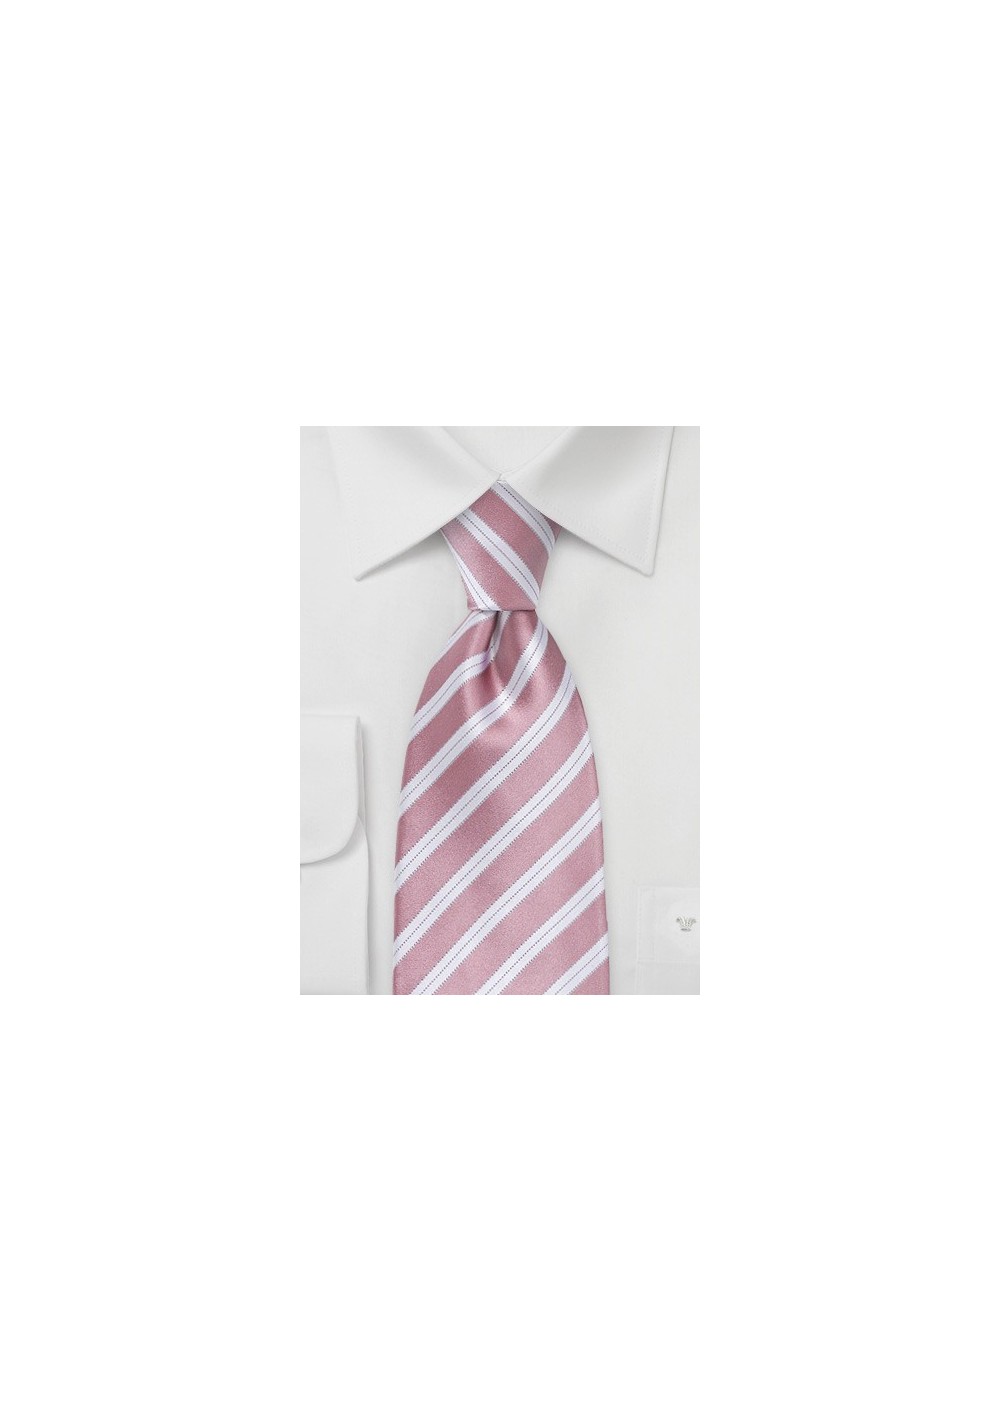 Striped Kids Sized Tie in Rose Petal Pink